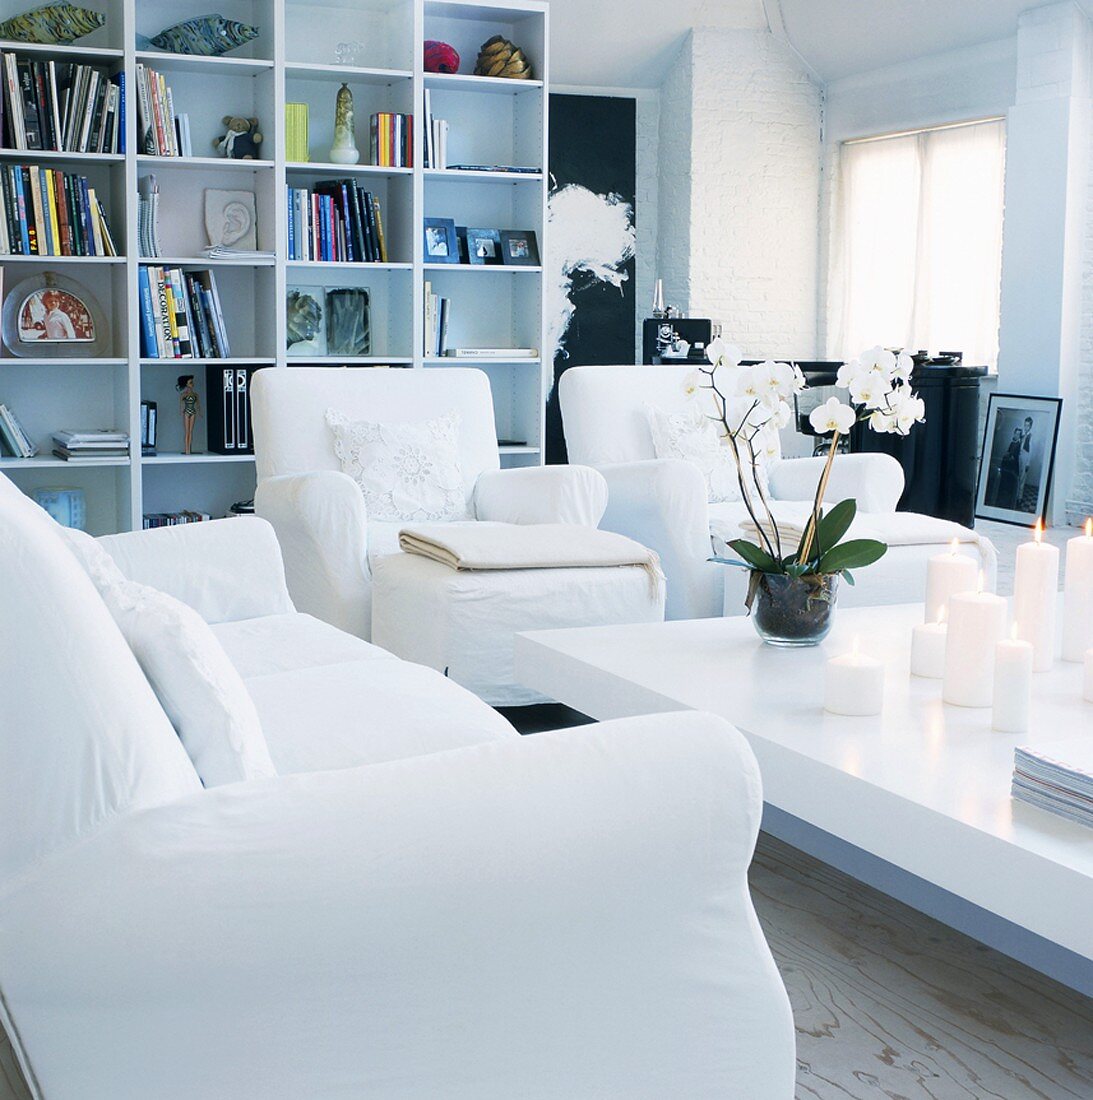 Elegantes Wohnzimmer mit weißer Couchgarnitur, brennenden weißen Kerzen und weiße Orchidee auf Couchtisch